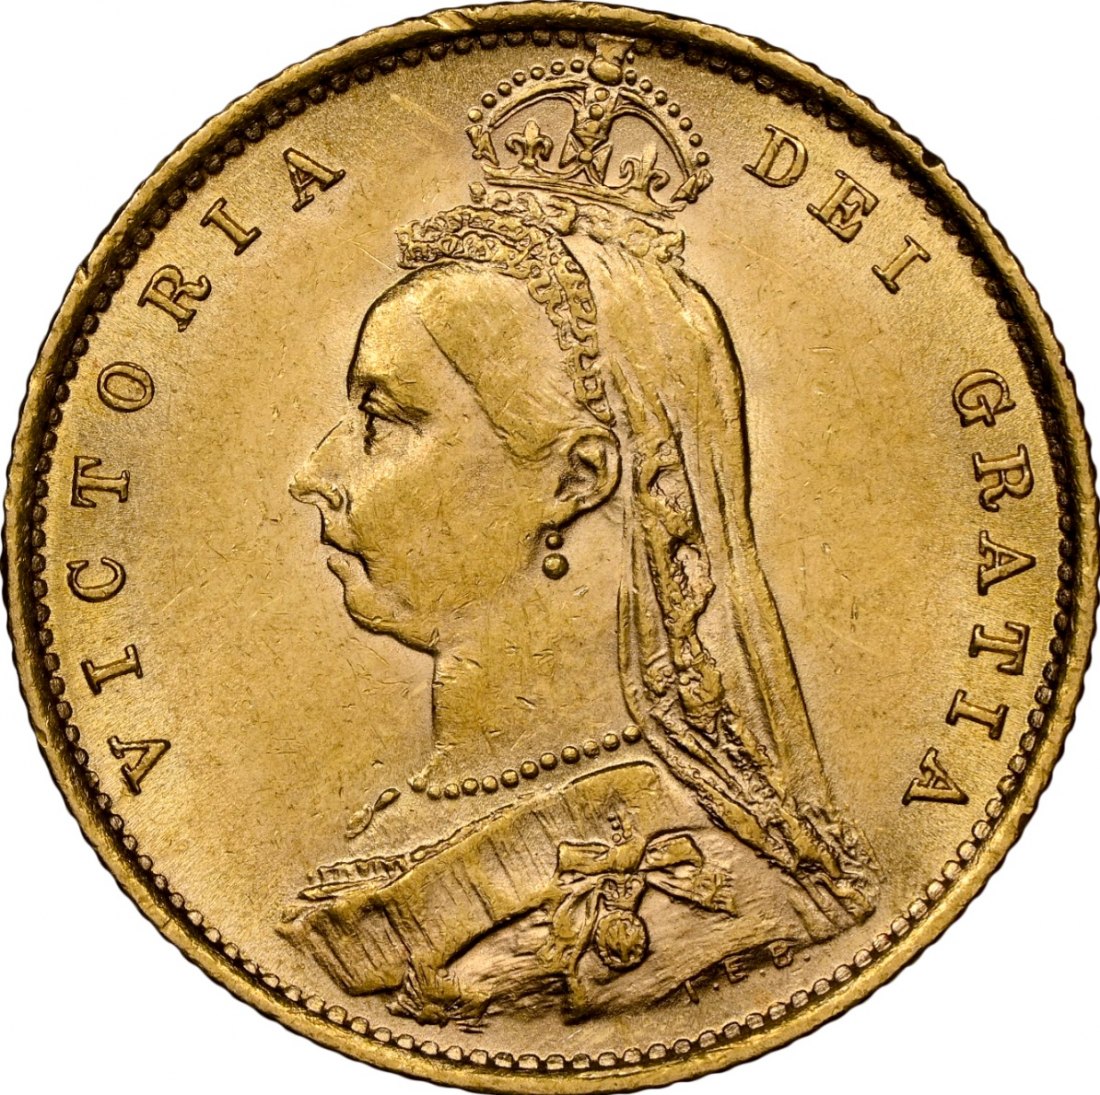  UK 1/2 Sovereign 1890 | MS61 | Königin Victoria Jubilee head   